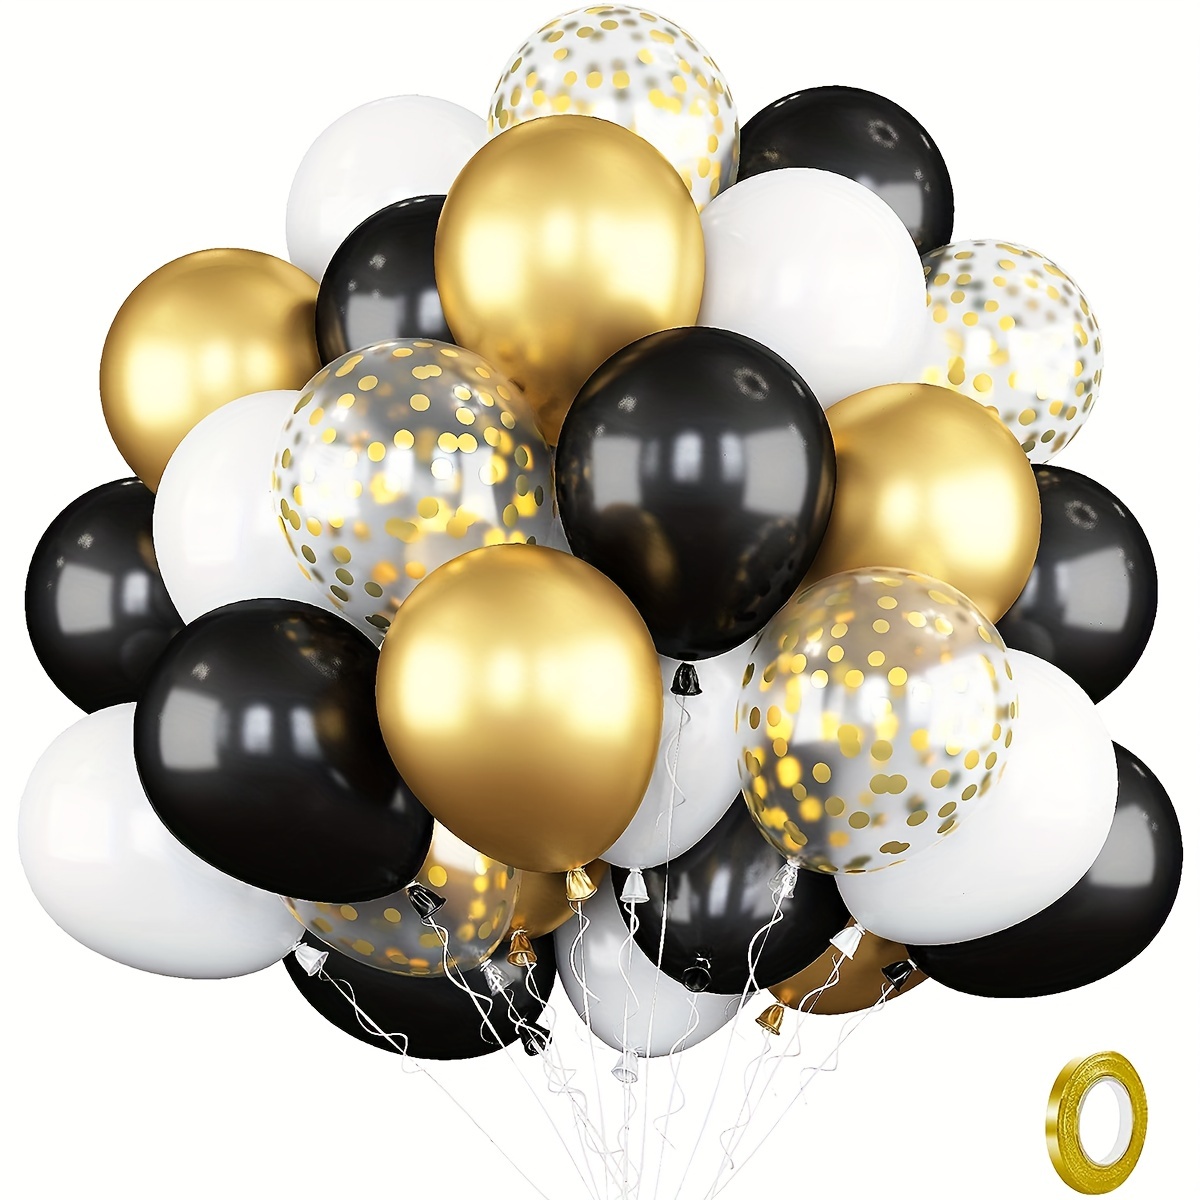 Globos decorativos de 60 cumpleaños, 15 unidades, color negro y plateado,  para fiesta de cumpleaños 60, globos de confeti de látex para hombres y